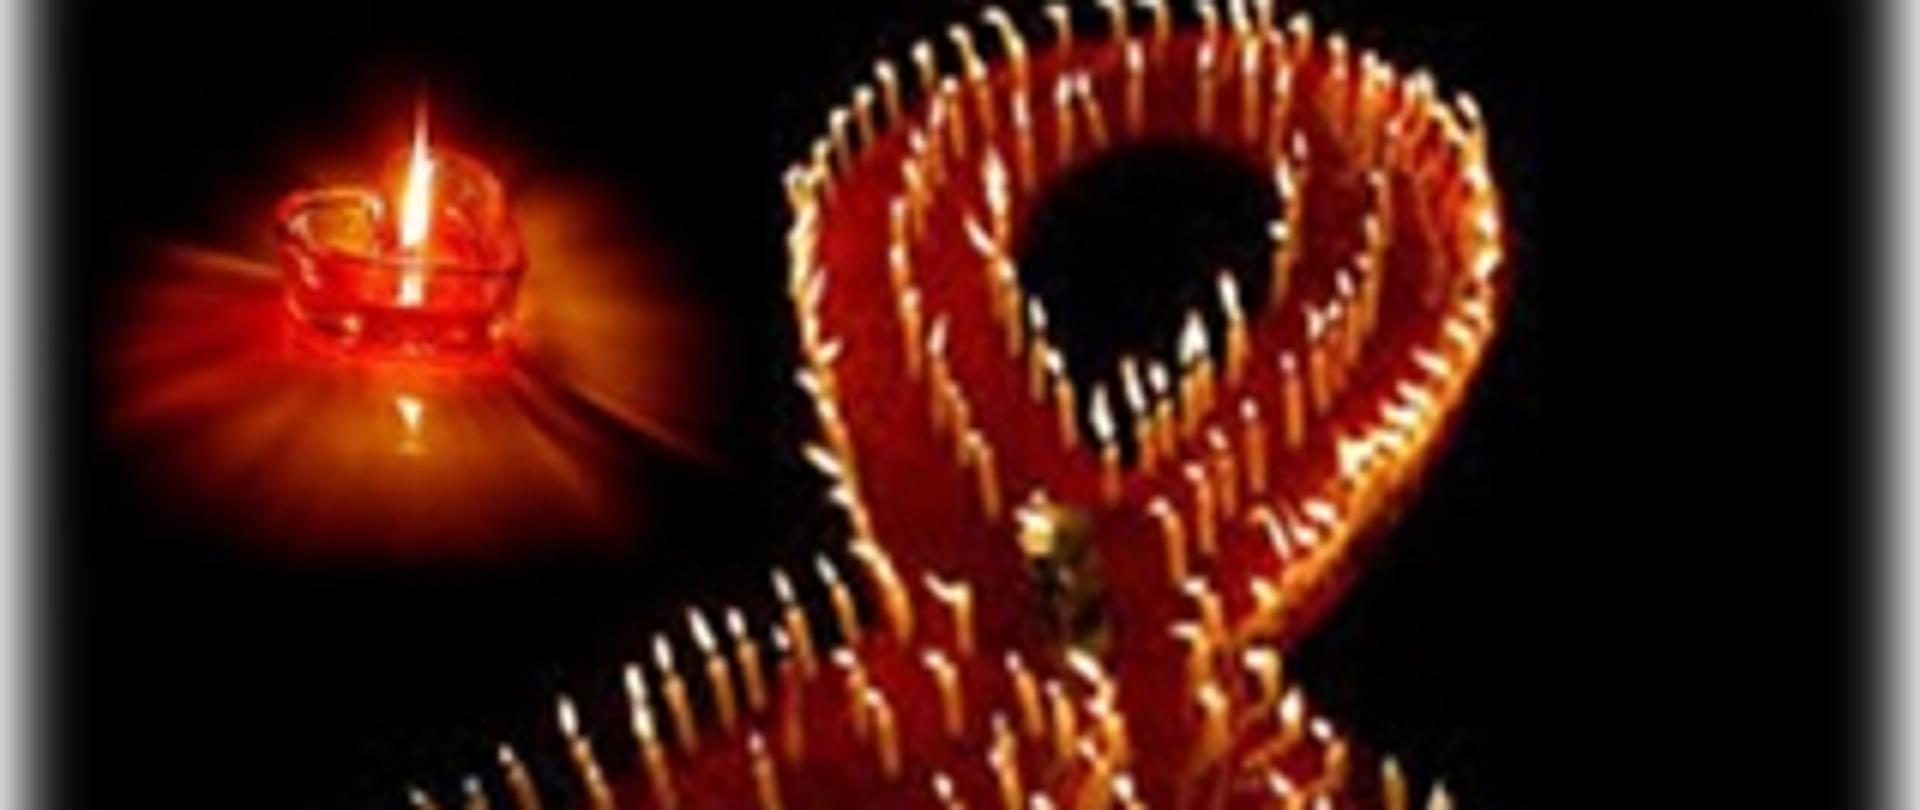 Ułożona wstążka ze świeczek, upamiętniająca osoby,które zmarły na AIDS